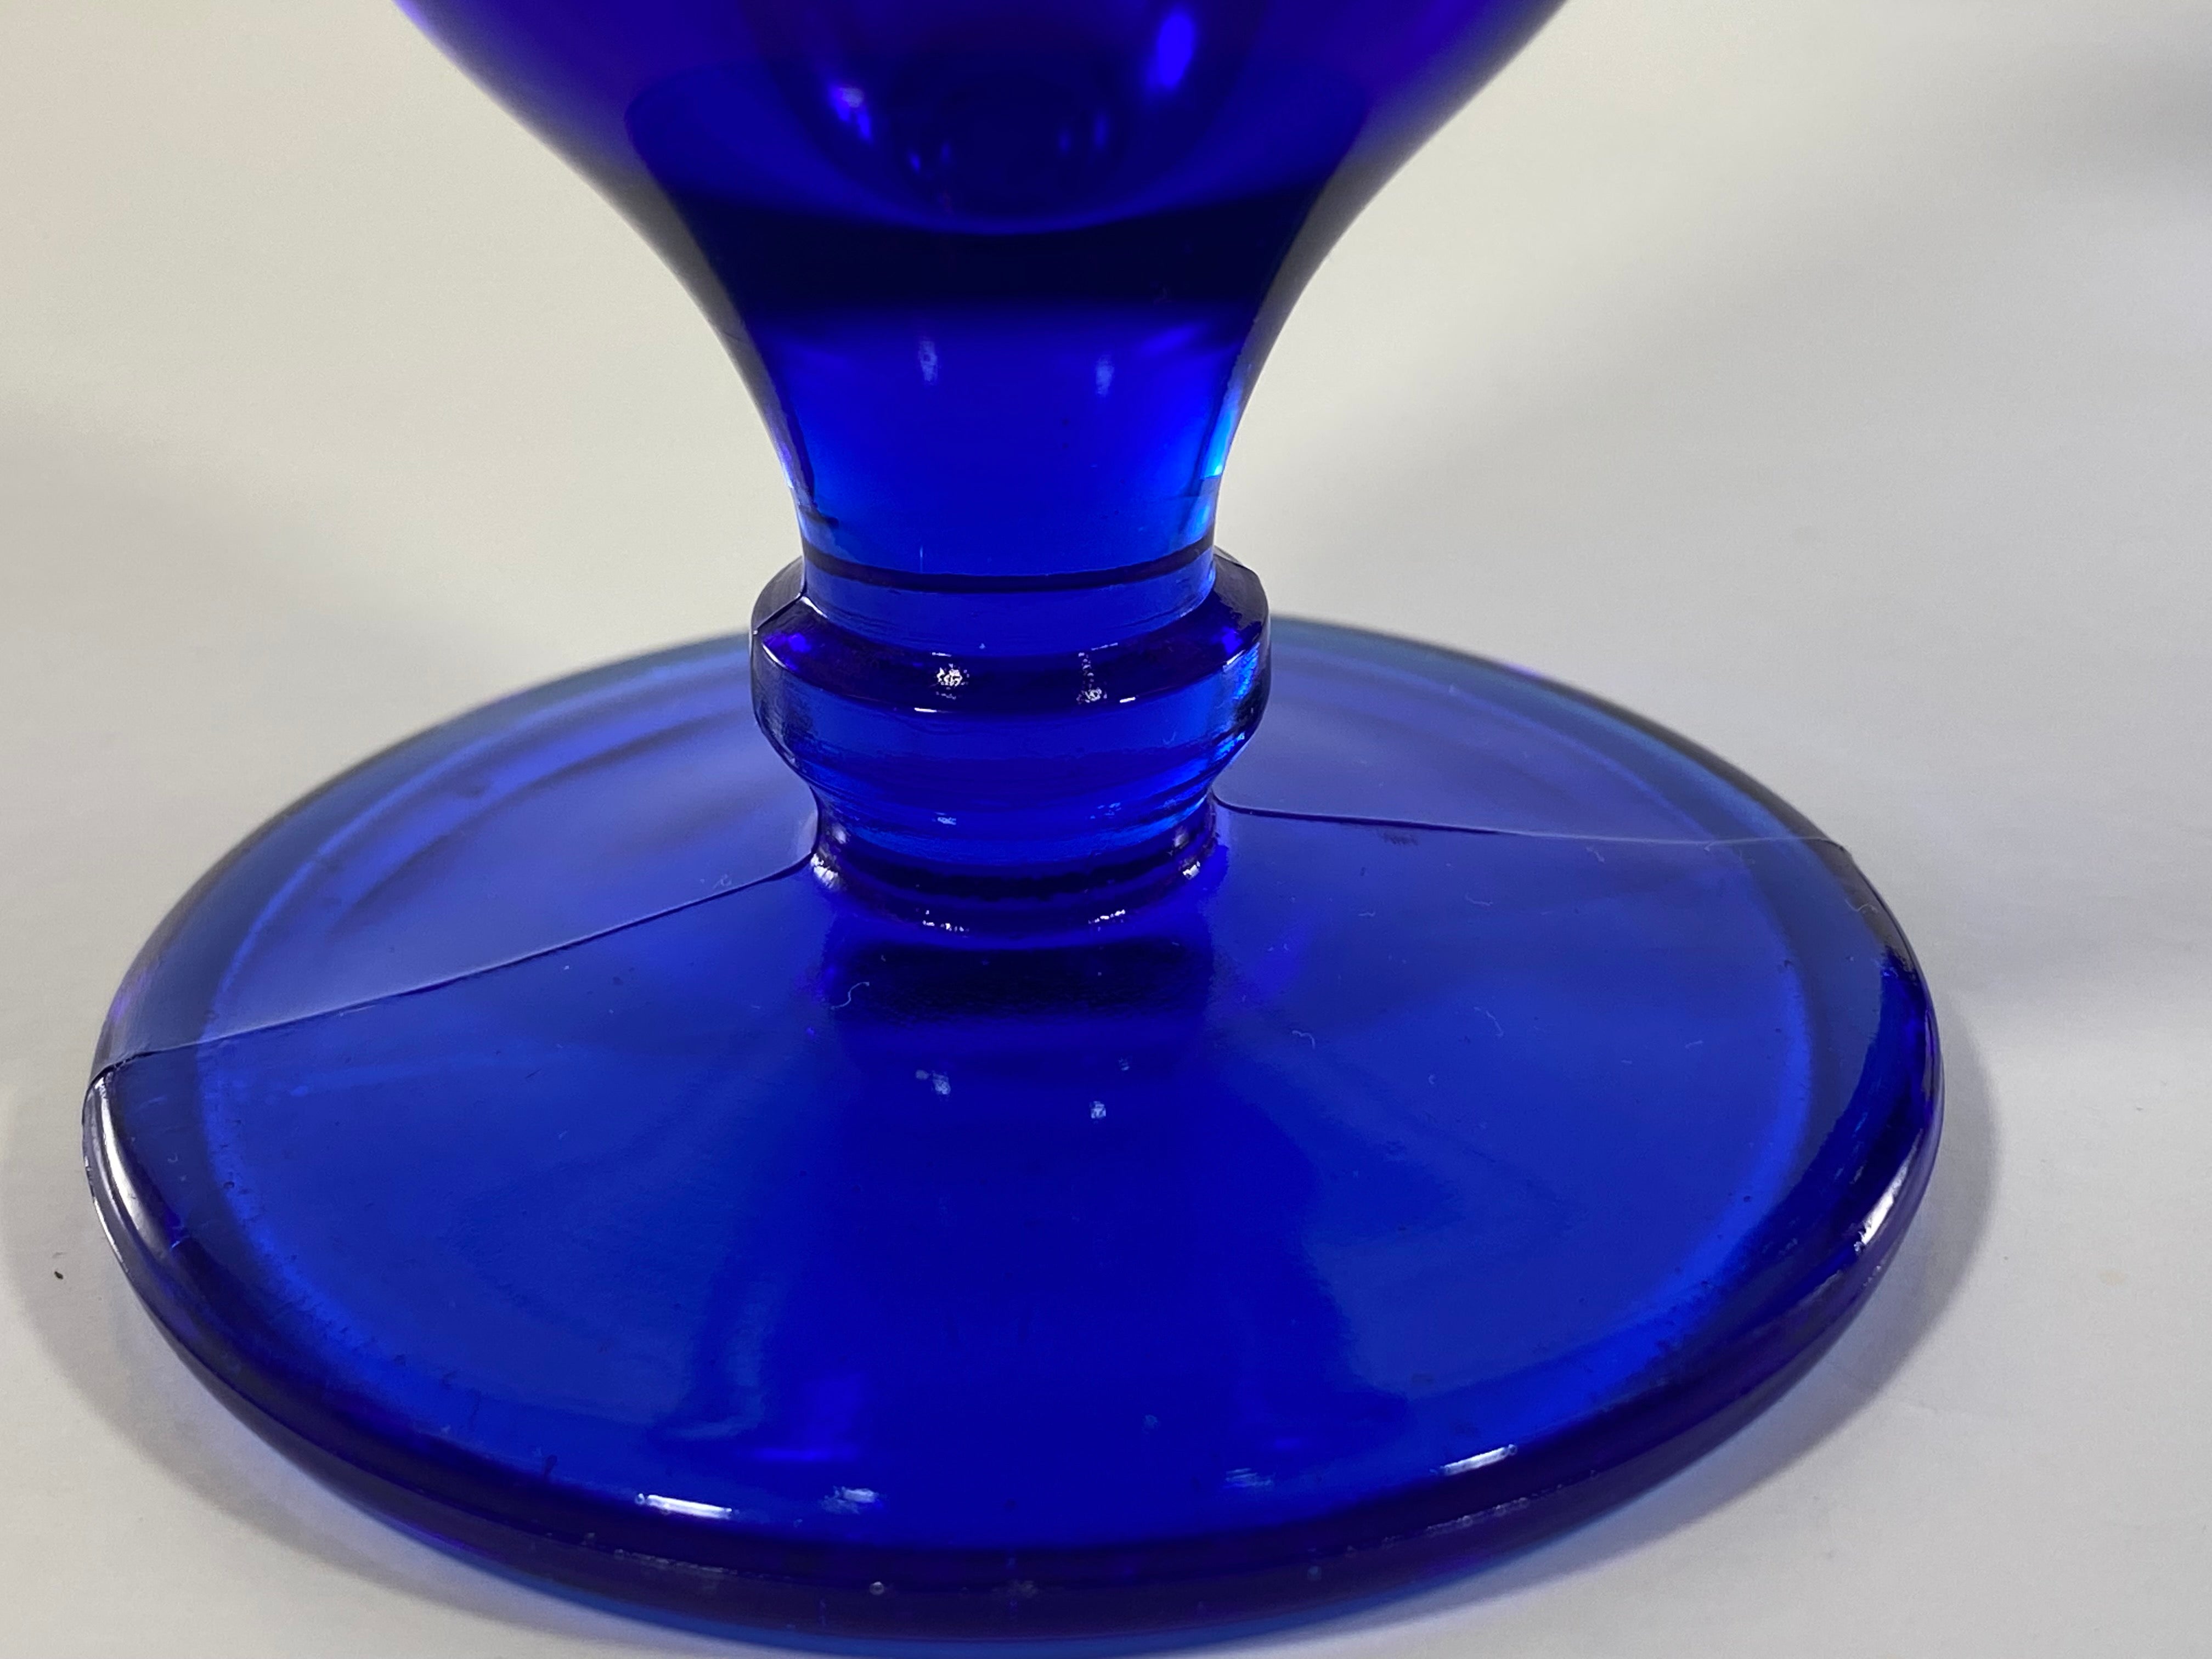 Vintage Cobalt Blue Depression Glass Sundae Glasses - Set of 4